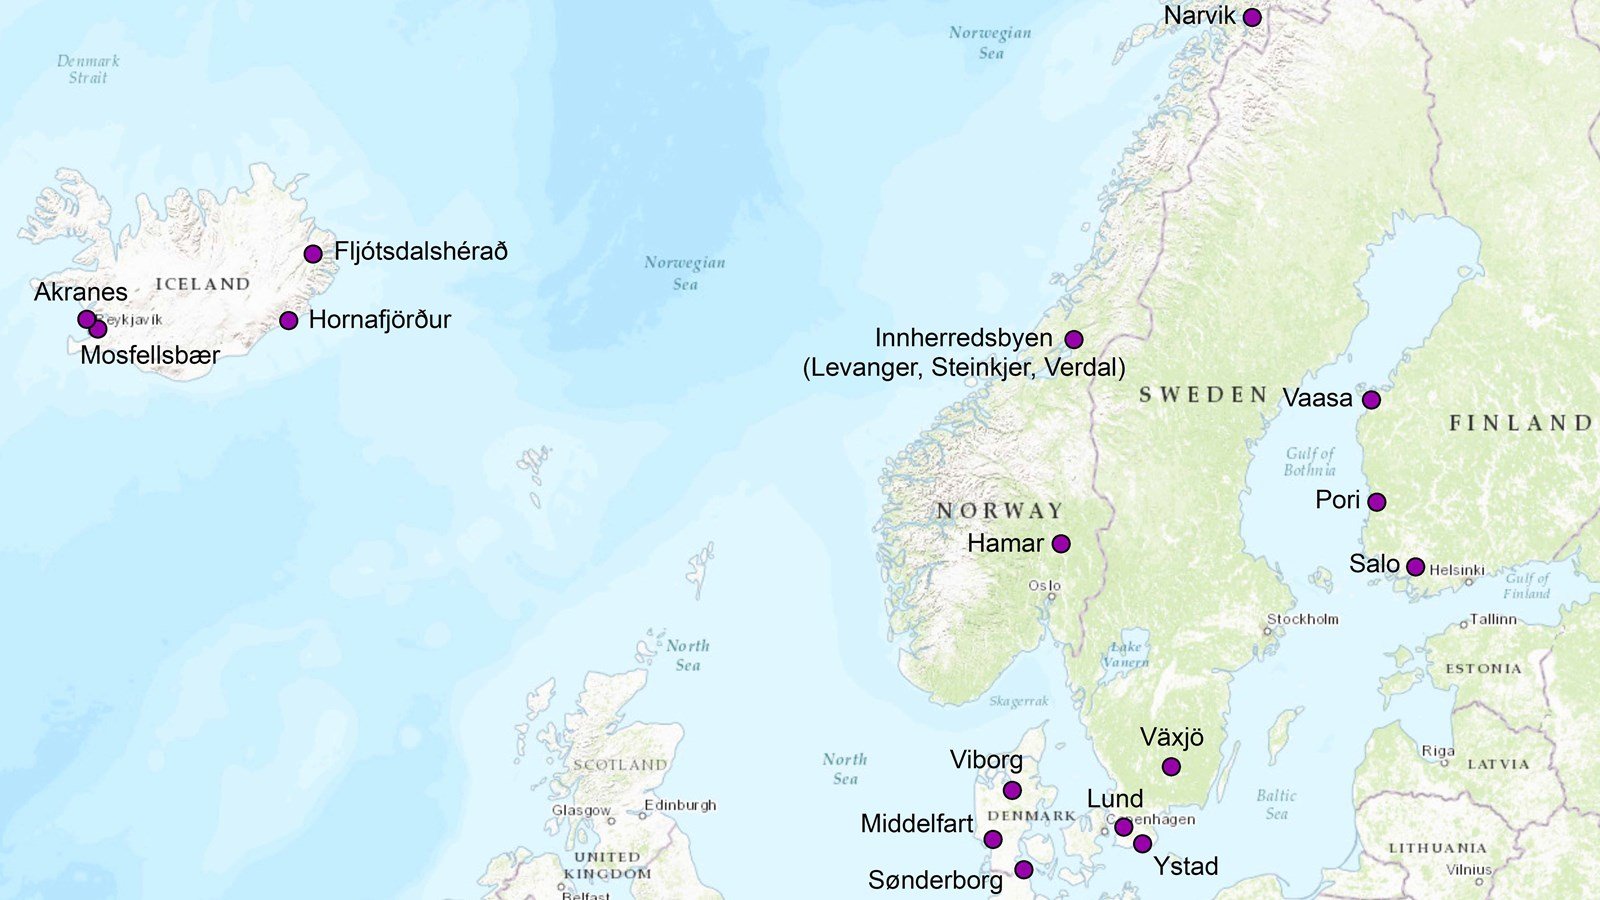 Attraktive nordiske byer og byregioner